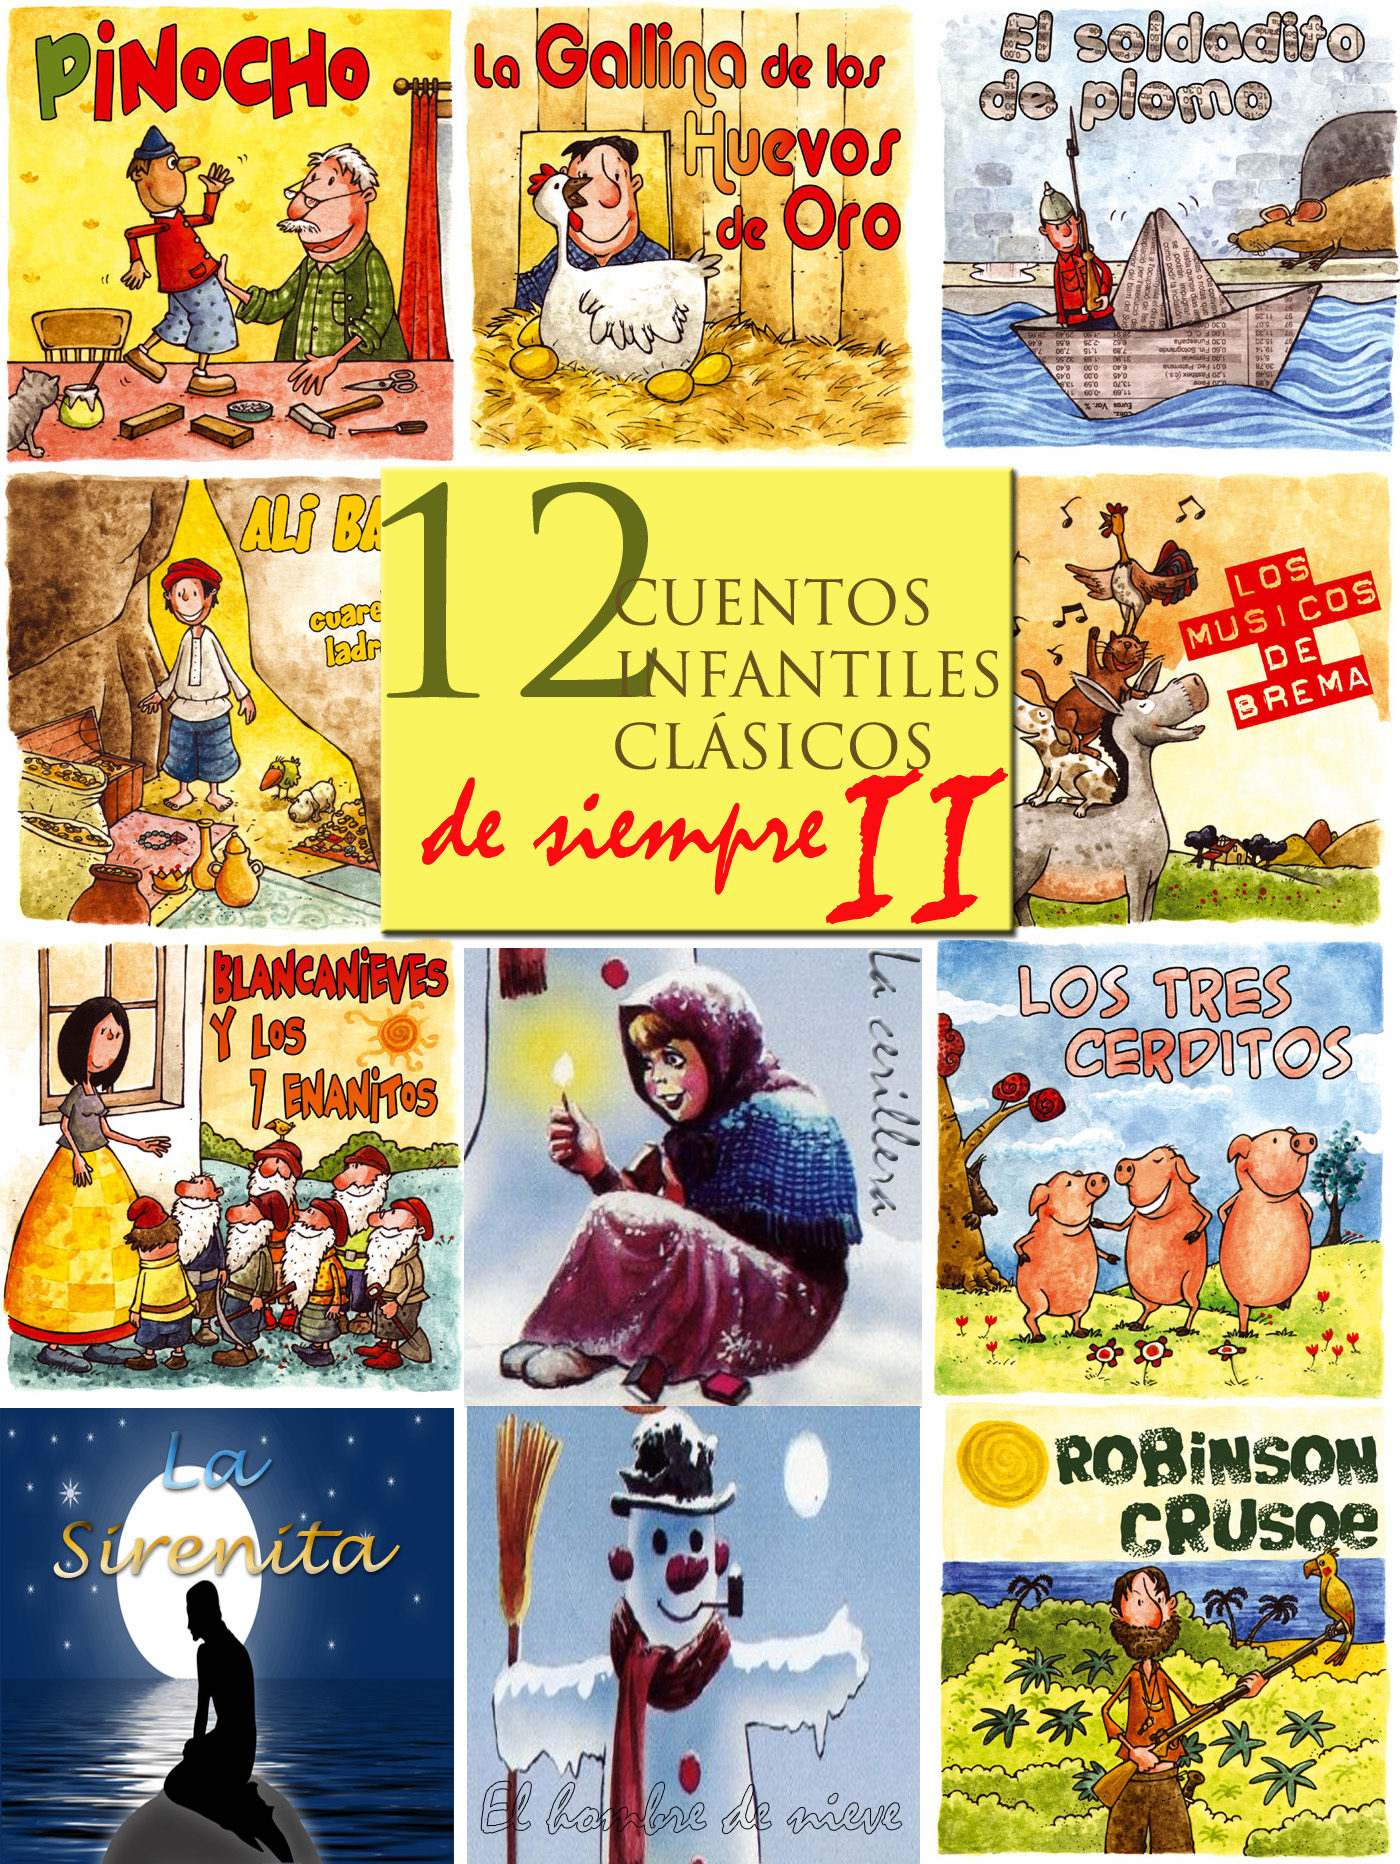 12 CUENTOS INFANTILES CLÁSICOS DE SIEMPRE II EBOOK